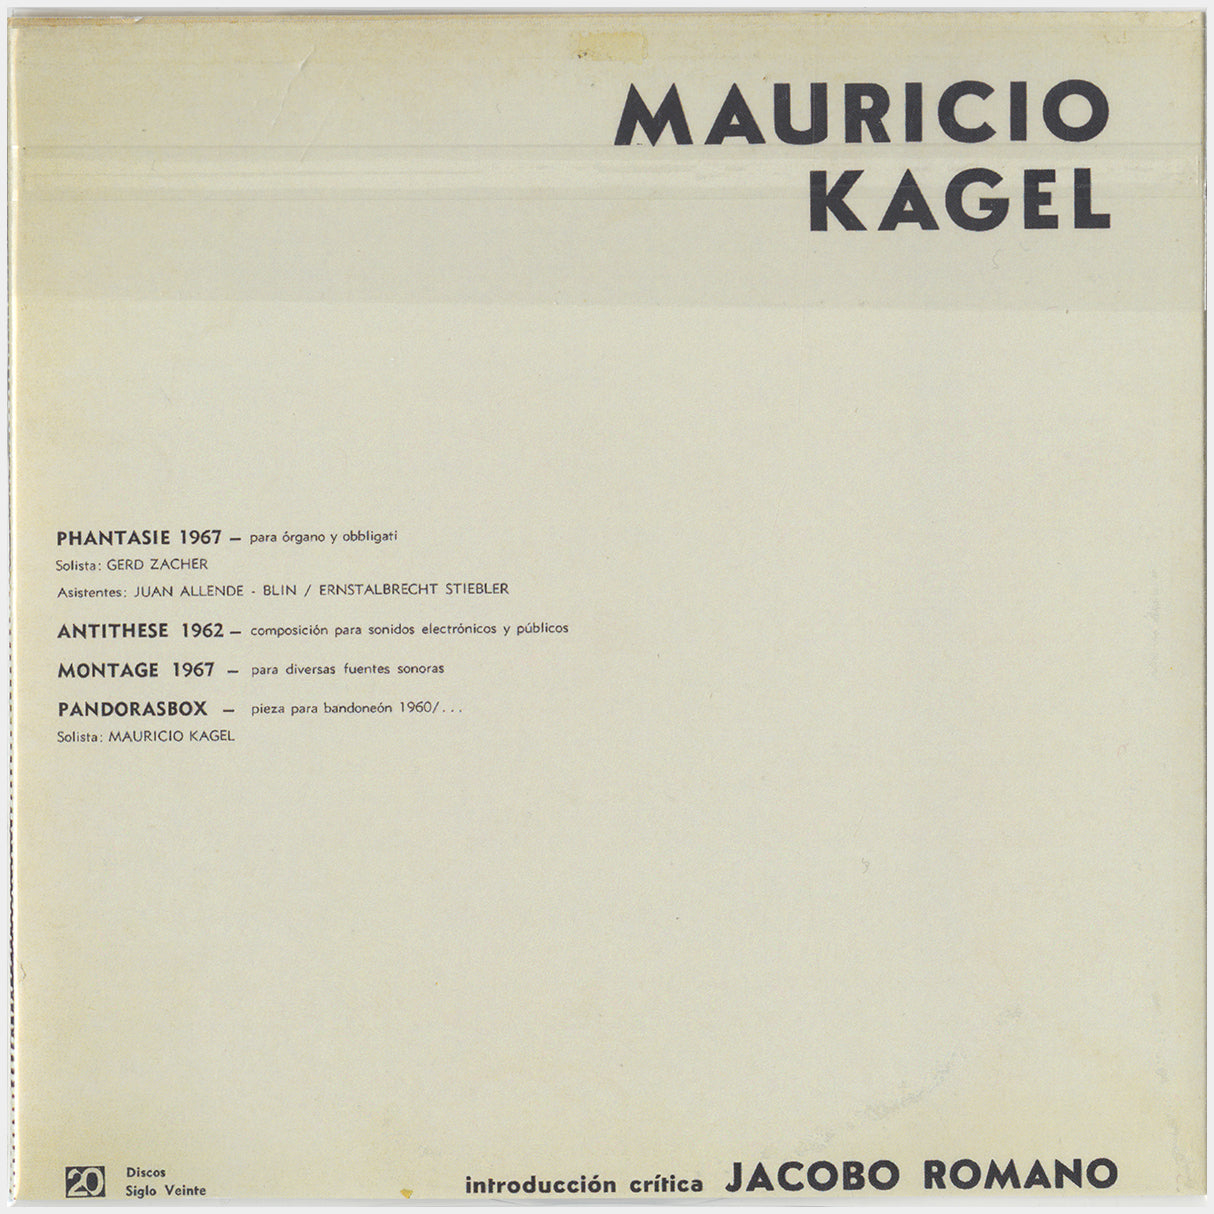 [CP 278 CD] Discos Siglo Veinte; Música Electrónica Latinoamericana, Mauricio Kagel